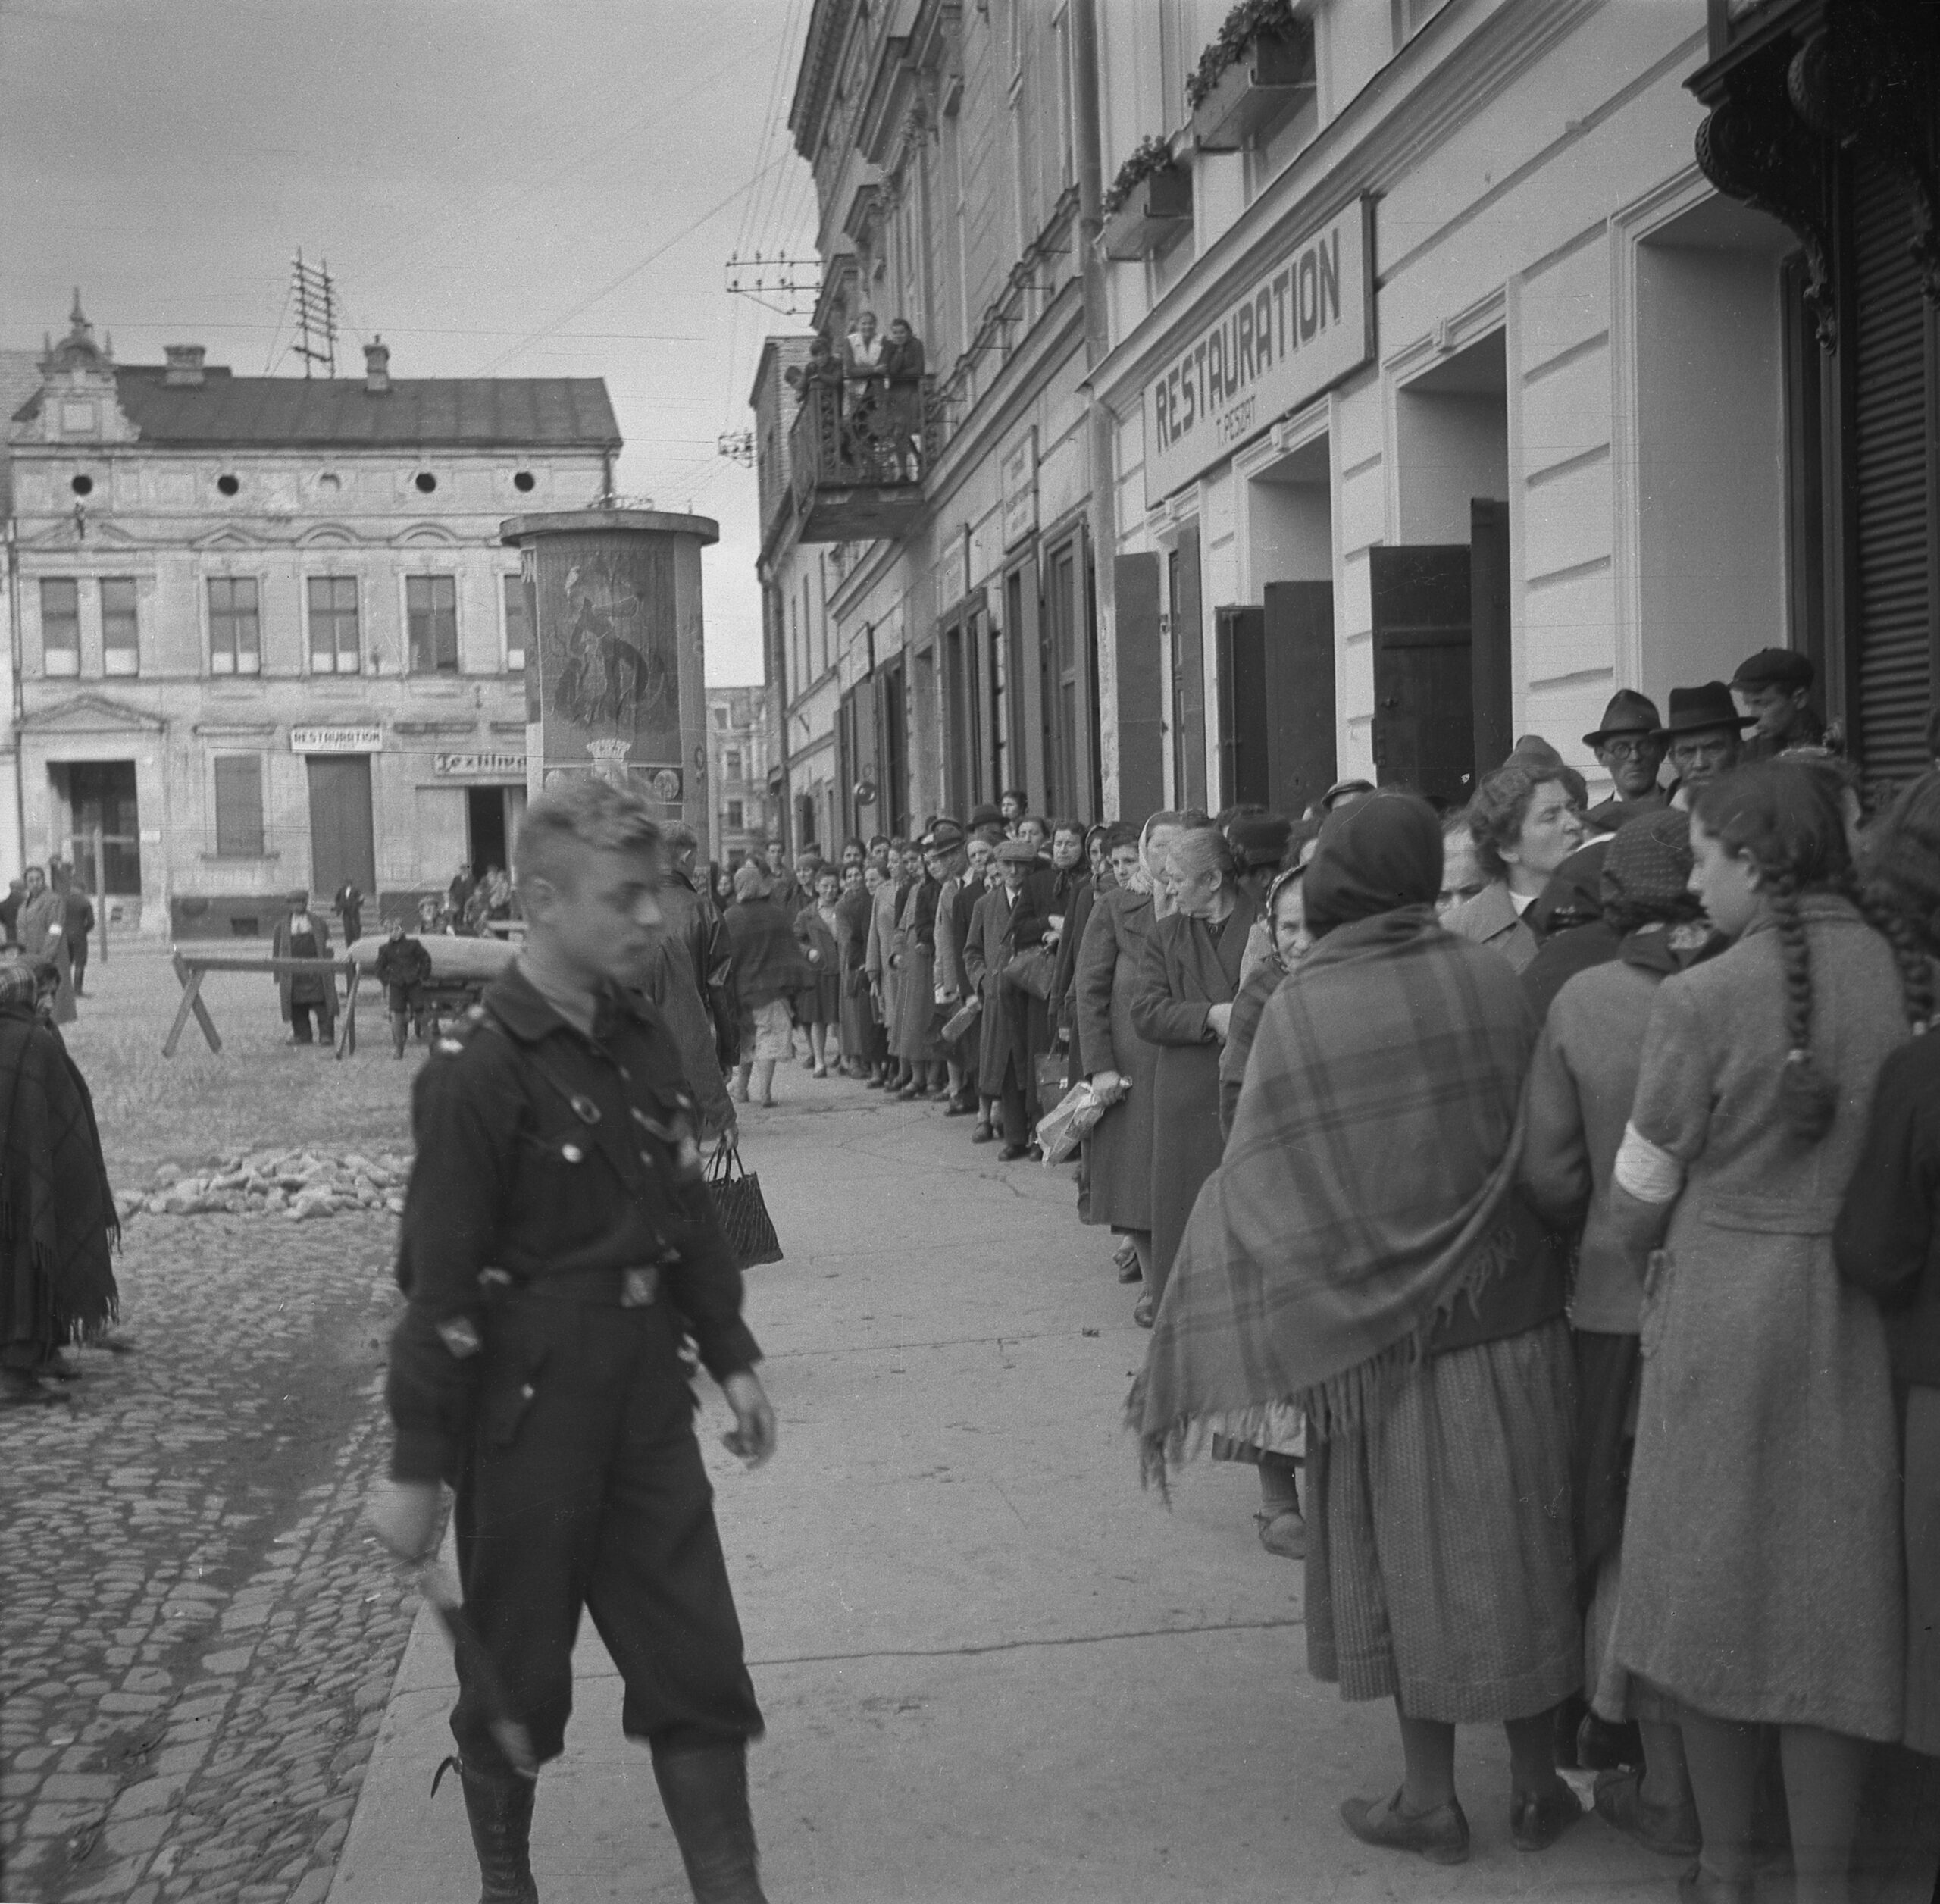 Rynek Główny w Oświęcimiu,
ok. 1940. Ze zbiorów Muzeum Żydowskiego w Oświęcimiu